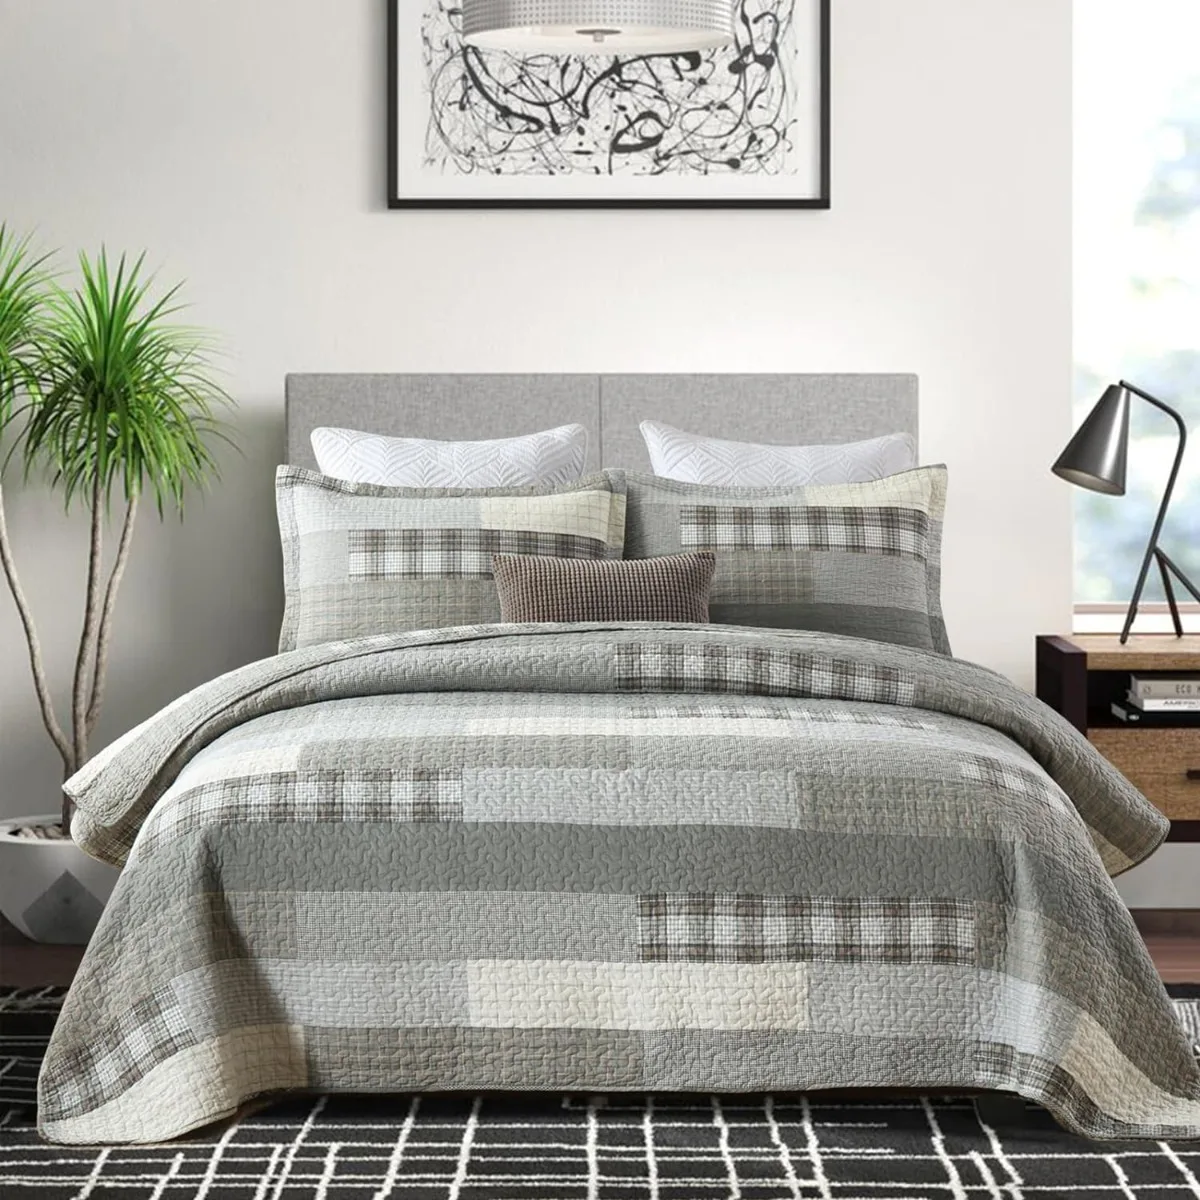 

Комплект стеганого одеяла из 100% хлопка, Королевский размер, легкое двухстороннее одеяло для фермерского хозяйства, серый (серый)/кремовый/хаки, 3 предмета